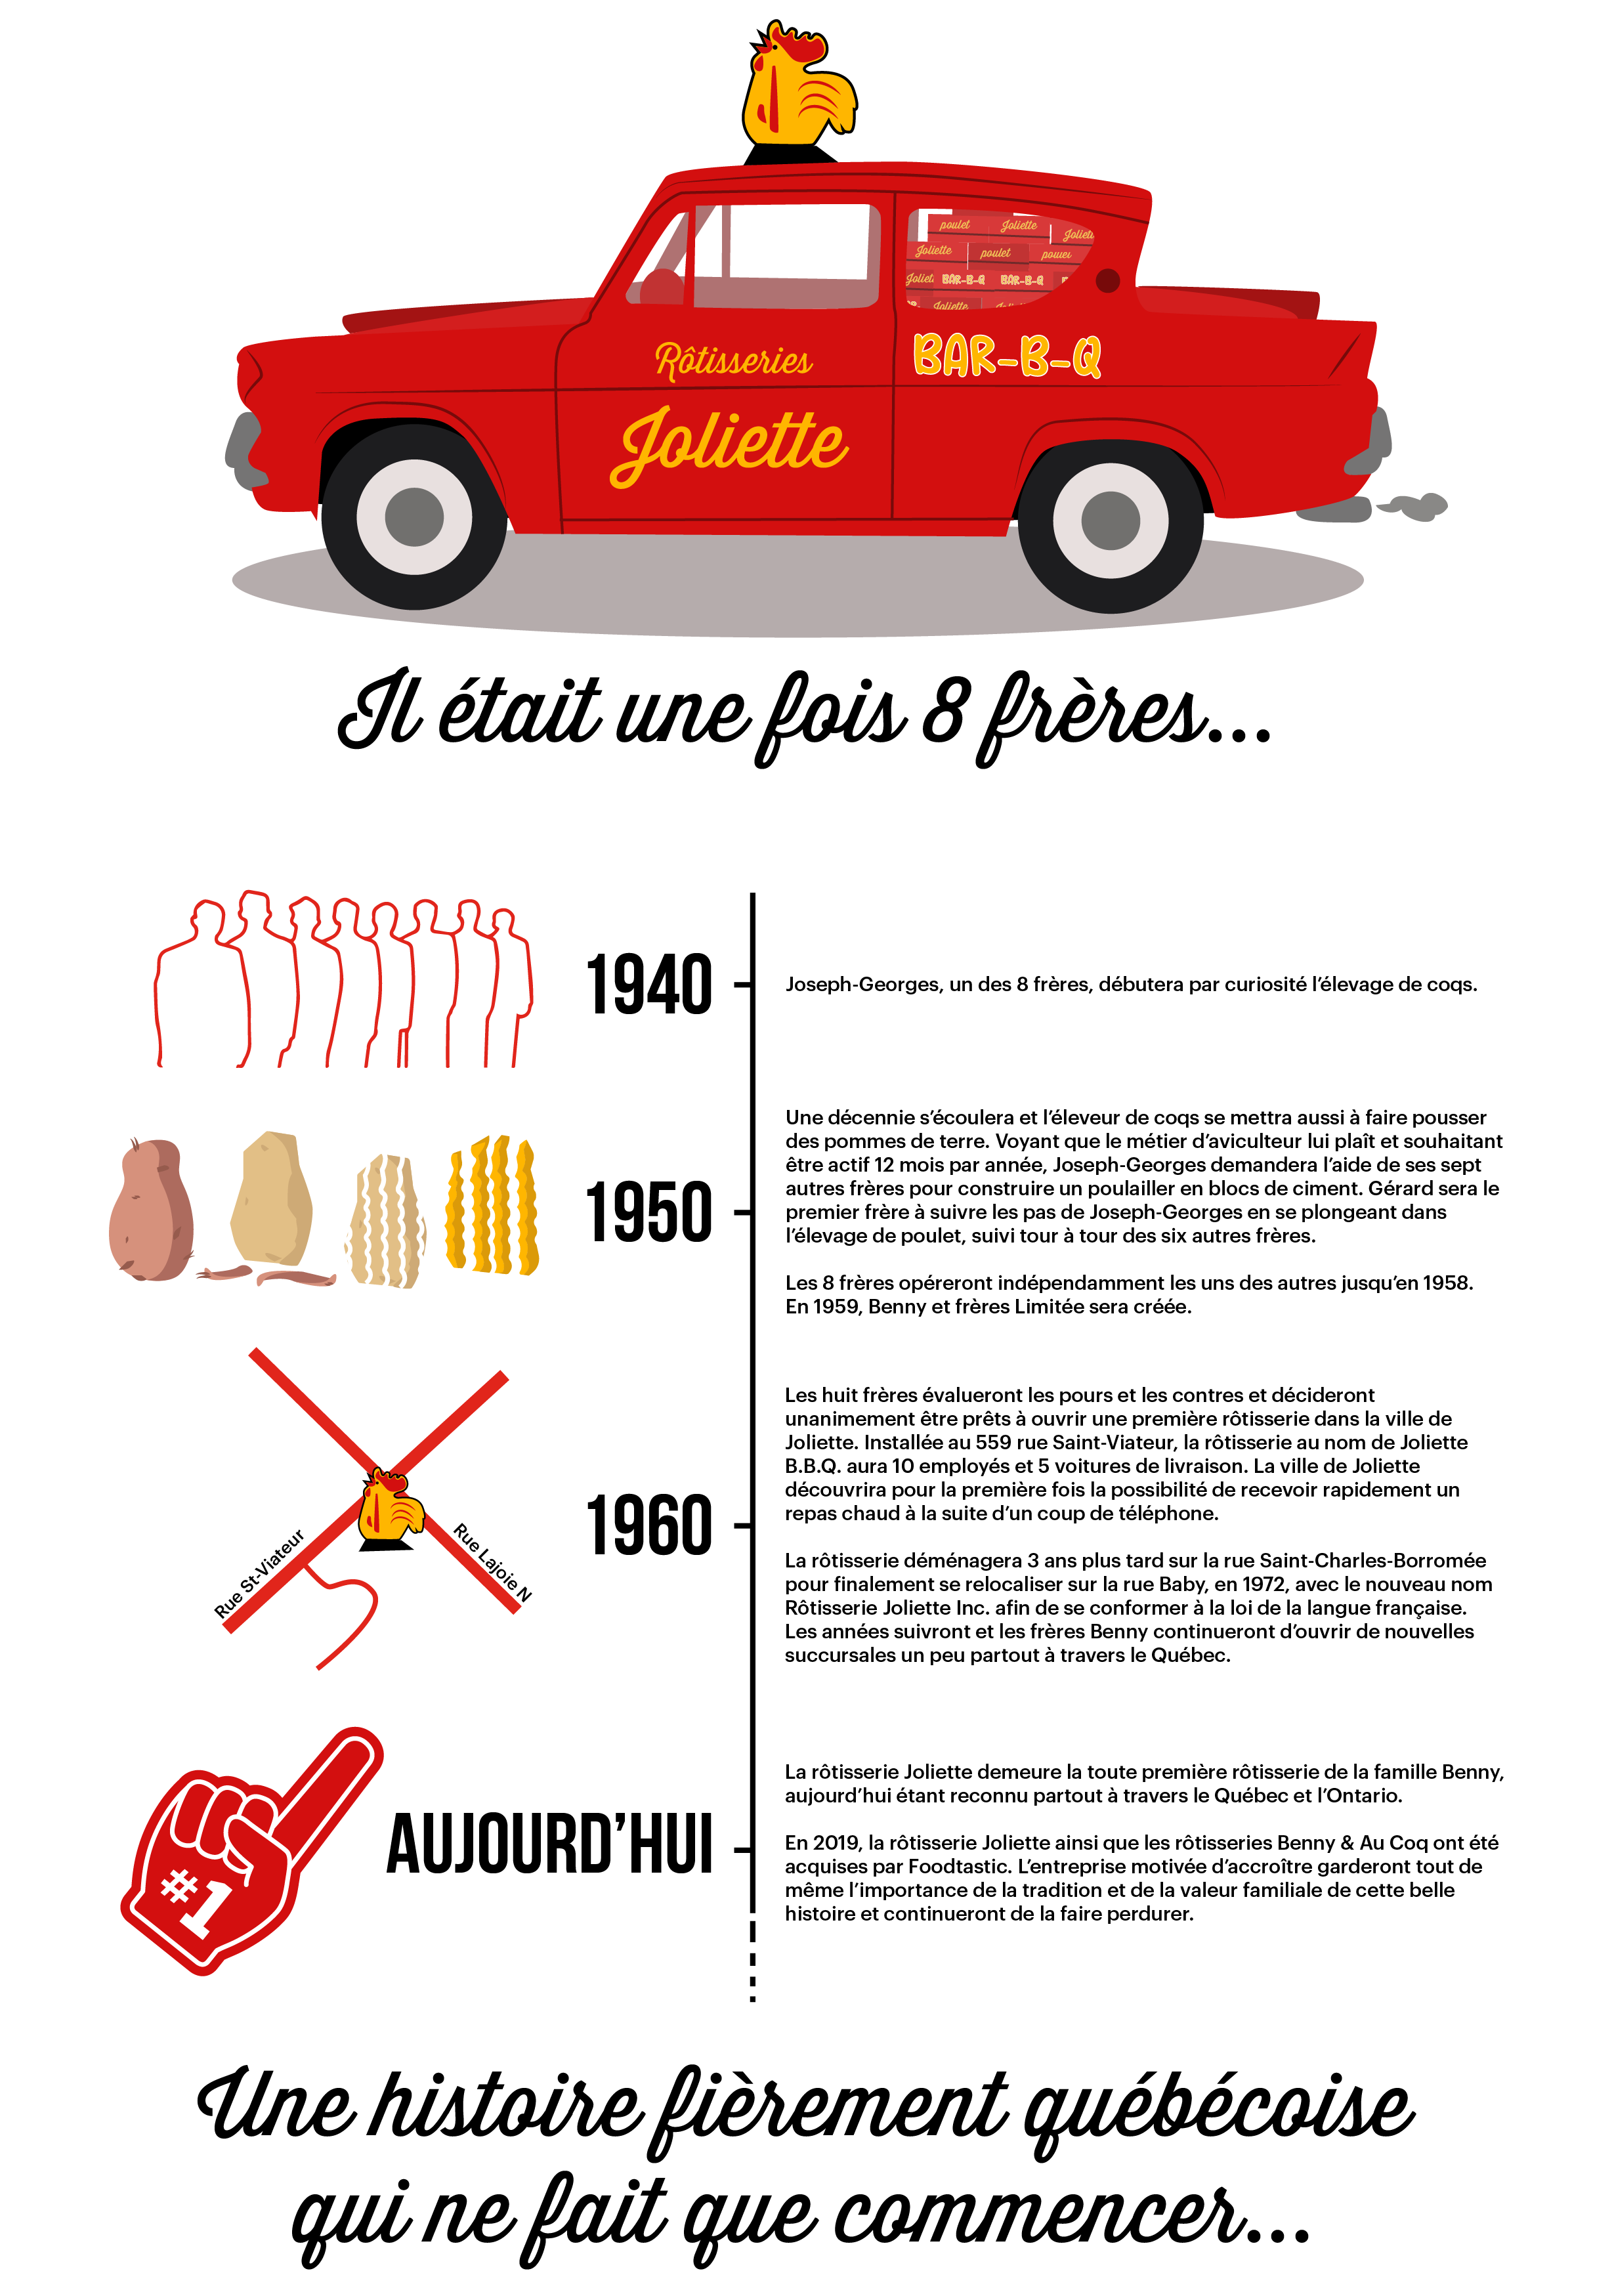 Rotisseries Joliette - Histoire